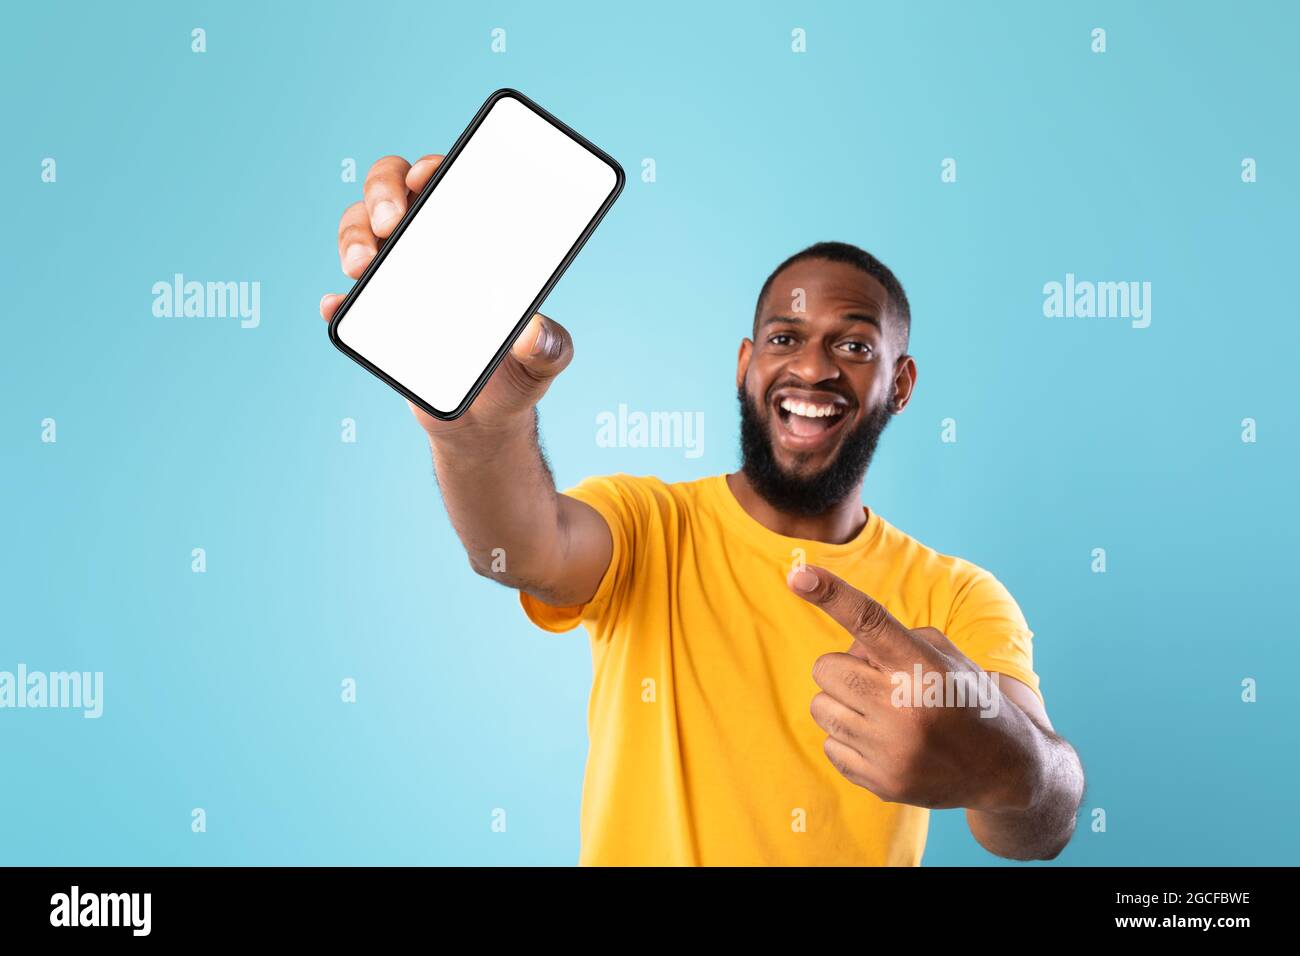 Neue tolle mobile App. Überglücklich schwarzer Kerl zeigt auf Smartphone mit leerem weißen Bildschirm auf blauem Hintergrund, mockup. Vorlage für die Anzeige von Mobiltelefonen, SPA Stockfoto